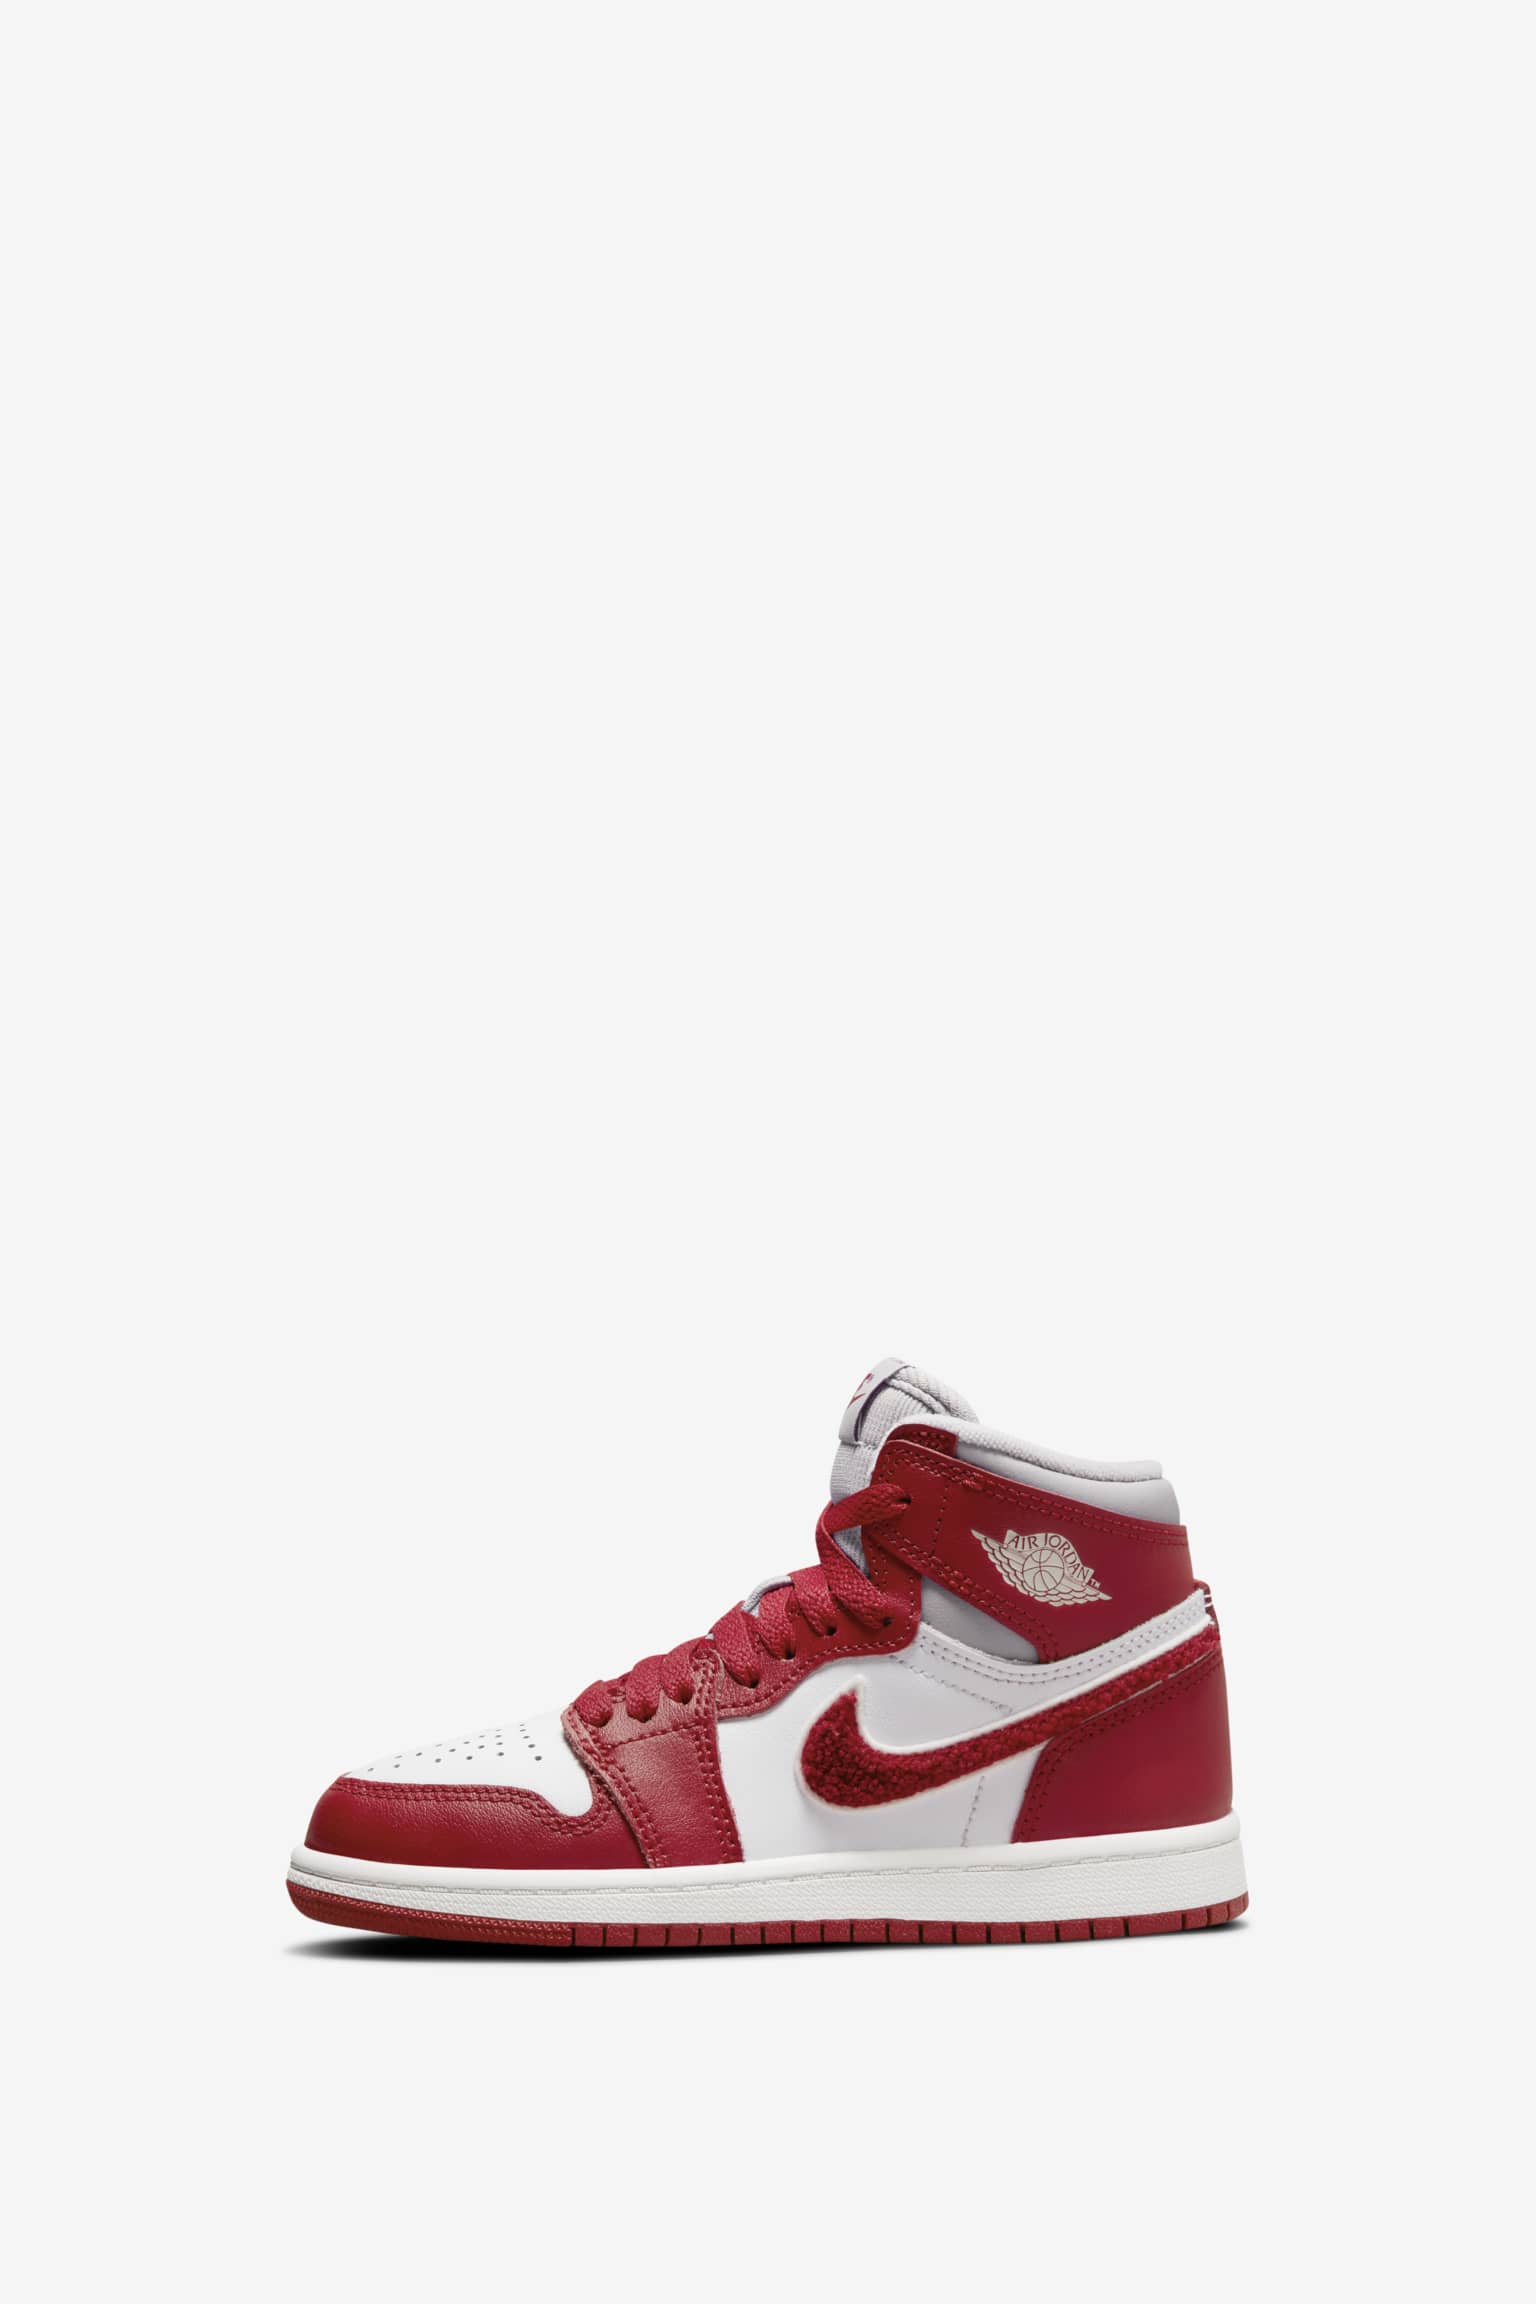 Asalto luego De confianza Air Jordan 1 "Varsity Red" para mujer (DJ4891-061). Nike SNKRS ES